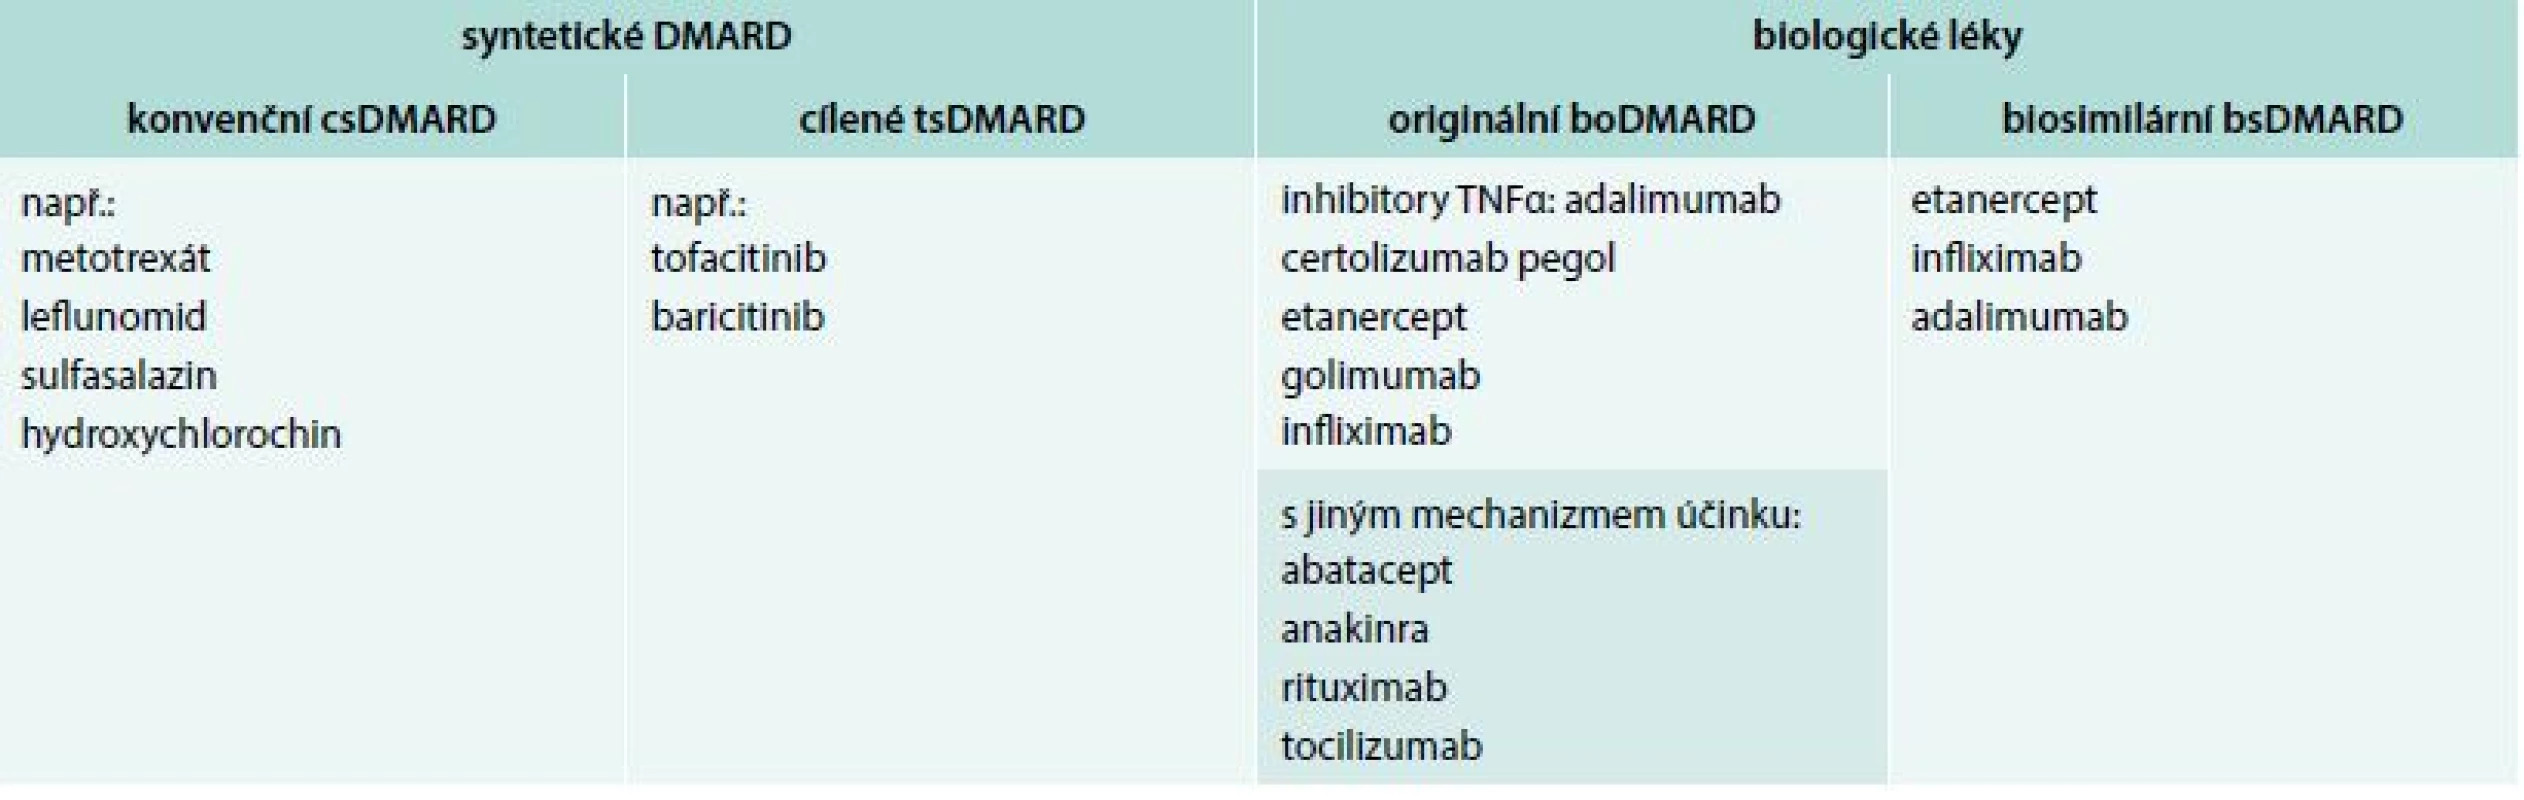 Rozdělení chorobu modifikujících léků (DMARD) pro revmatoidní artritidu. Upraveno podle [41]